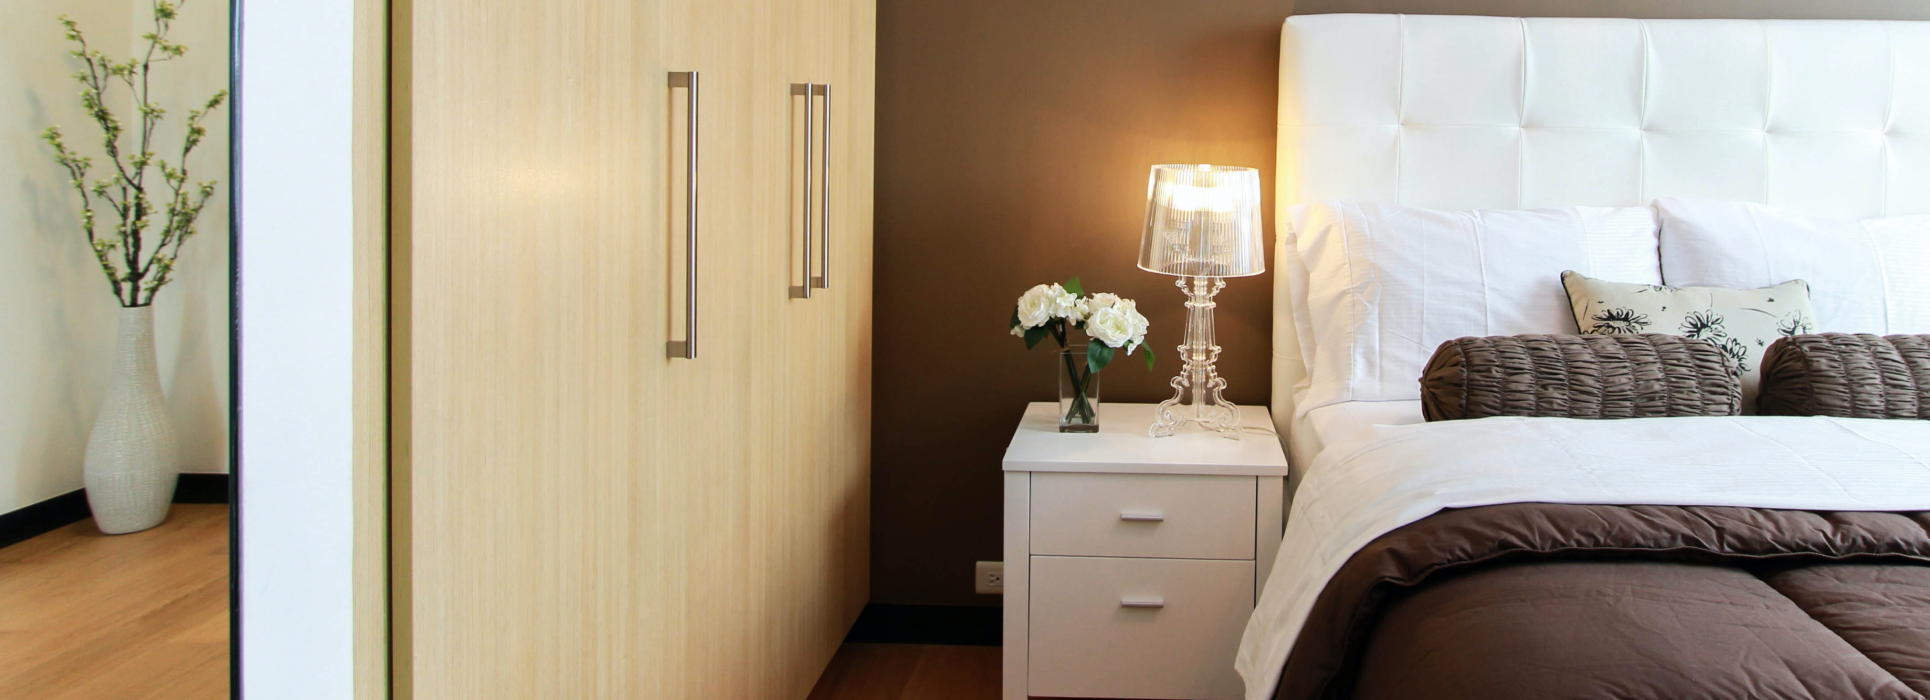 Idéias de iluminação de quarto - Crie uma iluminação moderna do quarto com dispositivos inteligentes